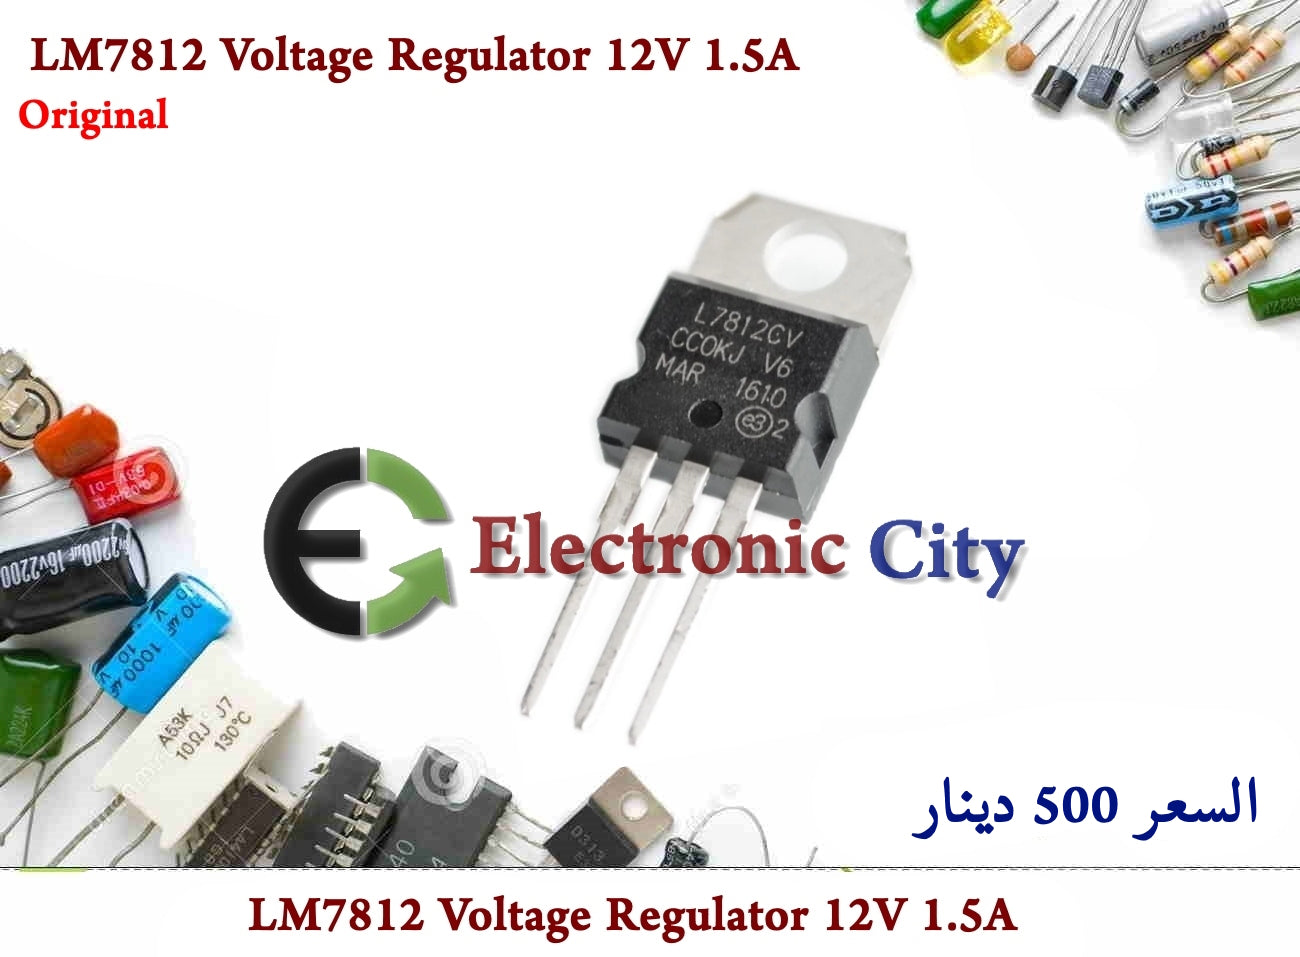 LM7812 Voltage Regulator 12V 1.5A